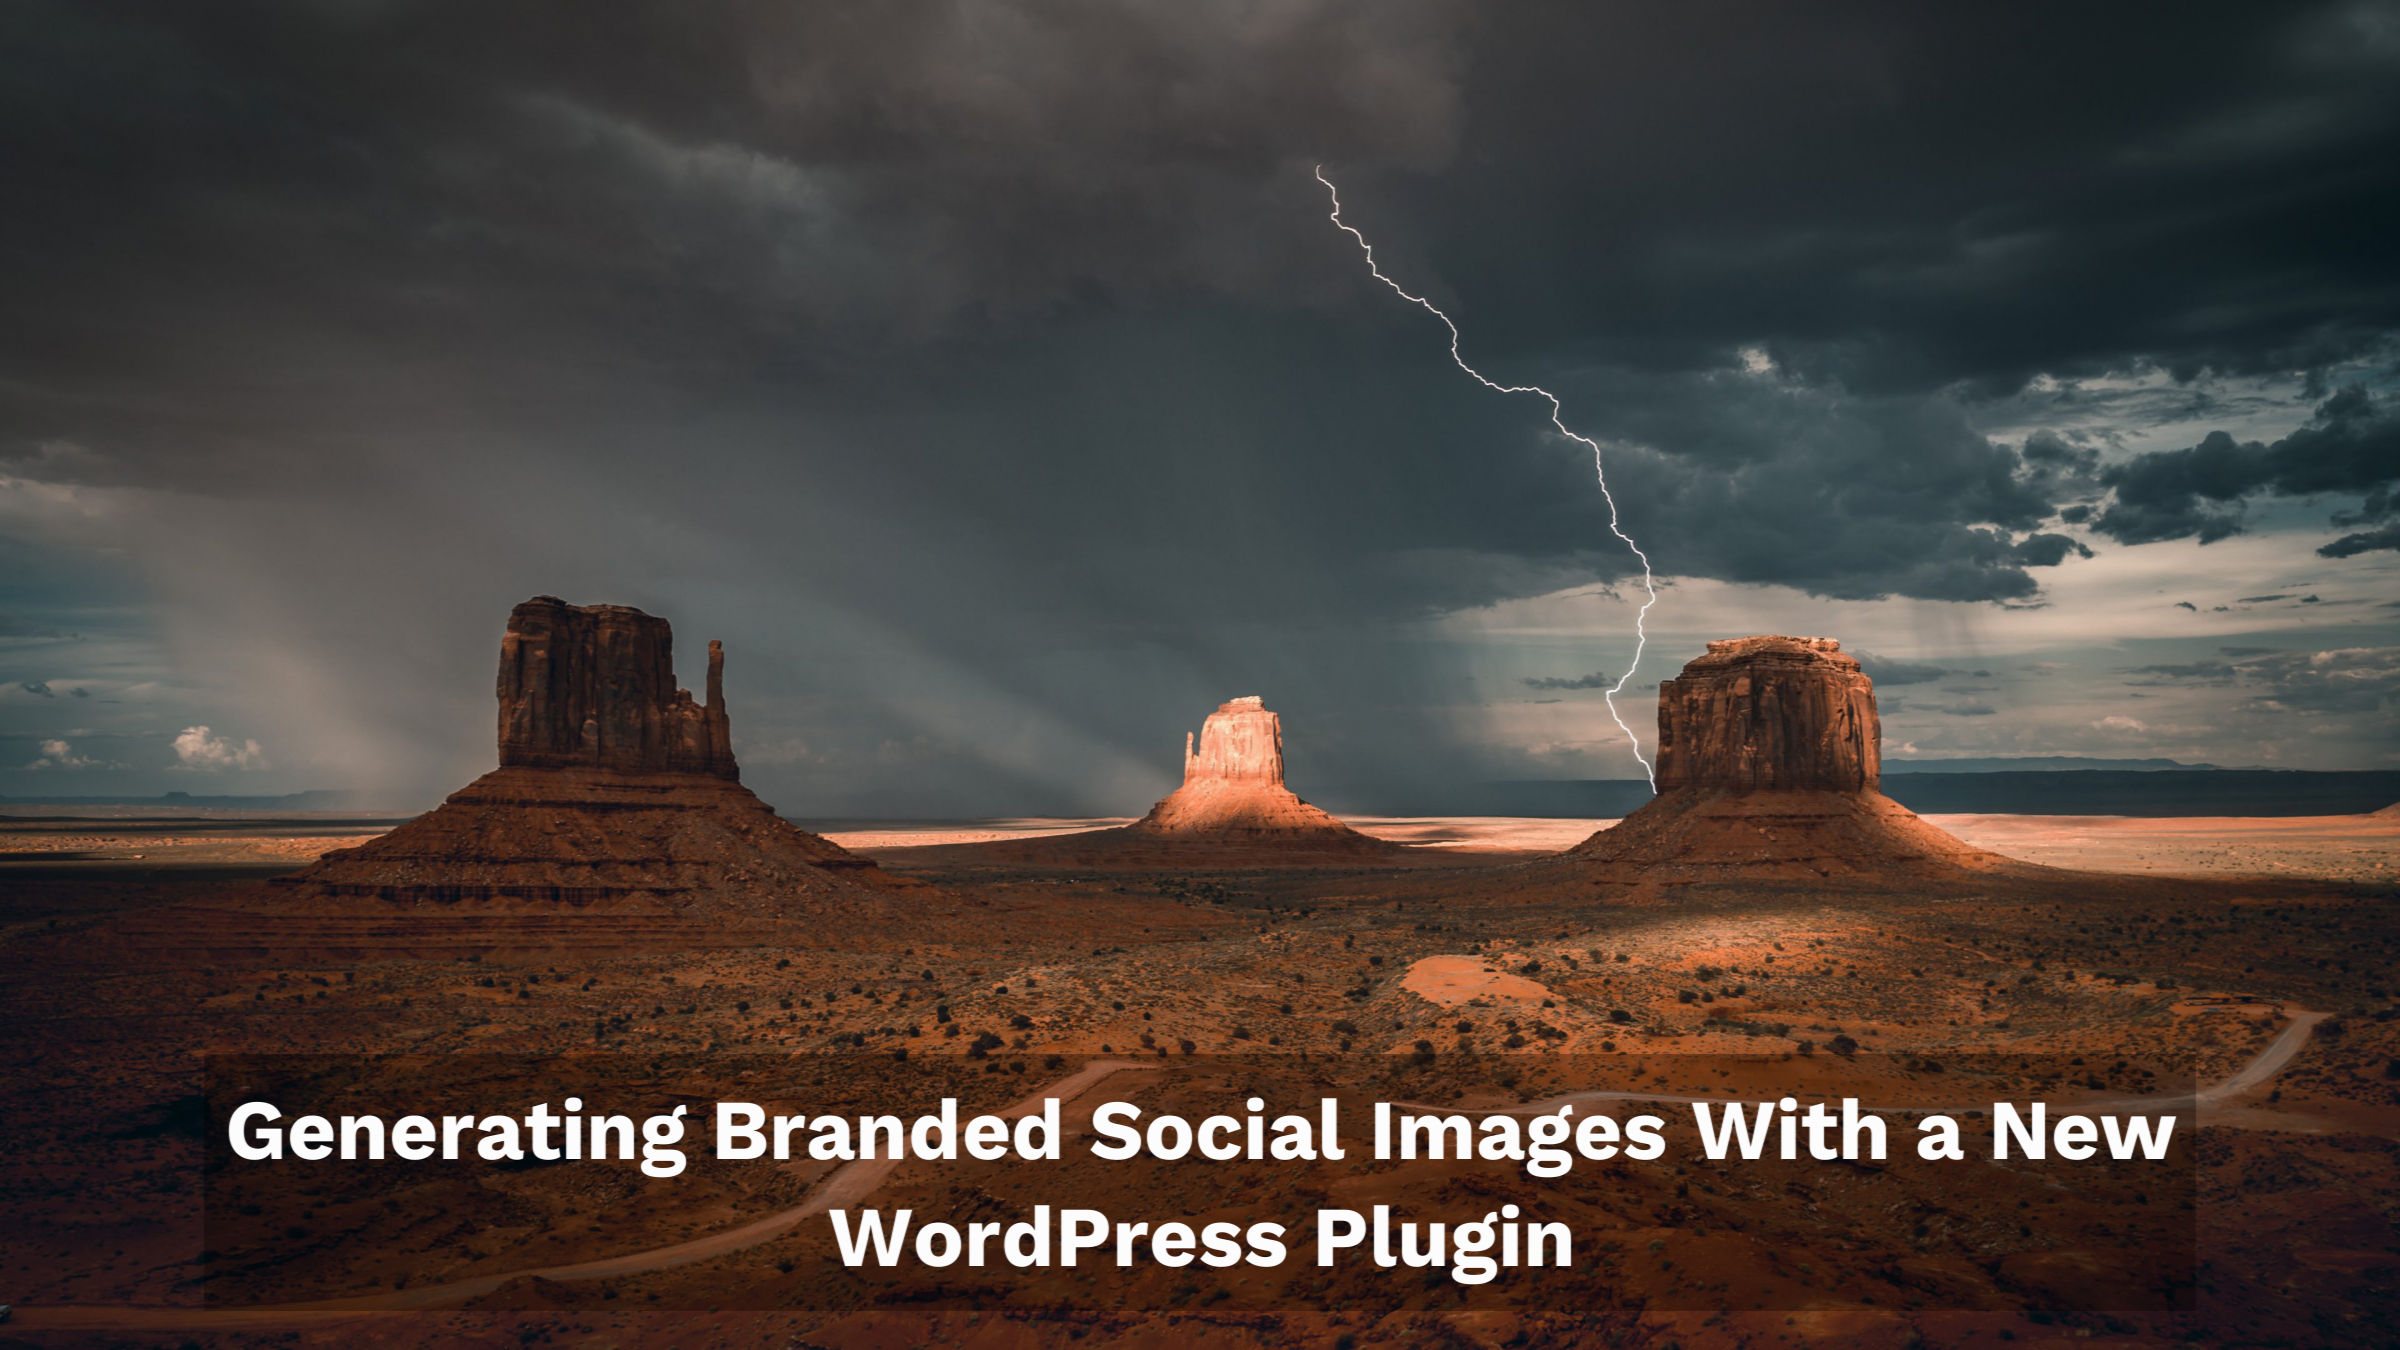 Immagini social brandizzate, un nuovo plug-in per la generazione di immagini grafiche aperte per post – WP Tavern